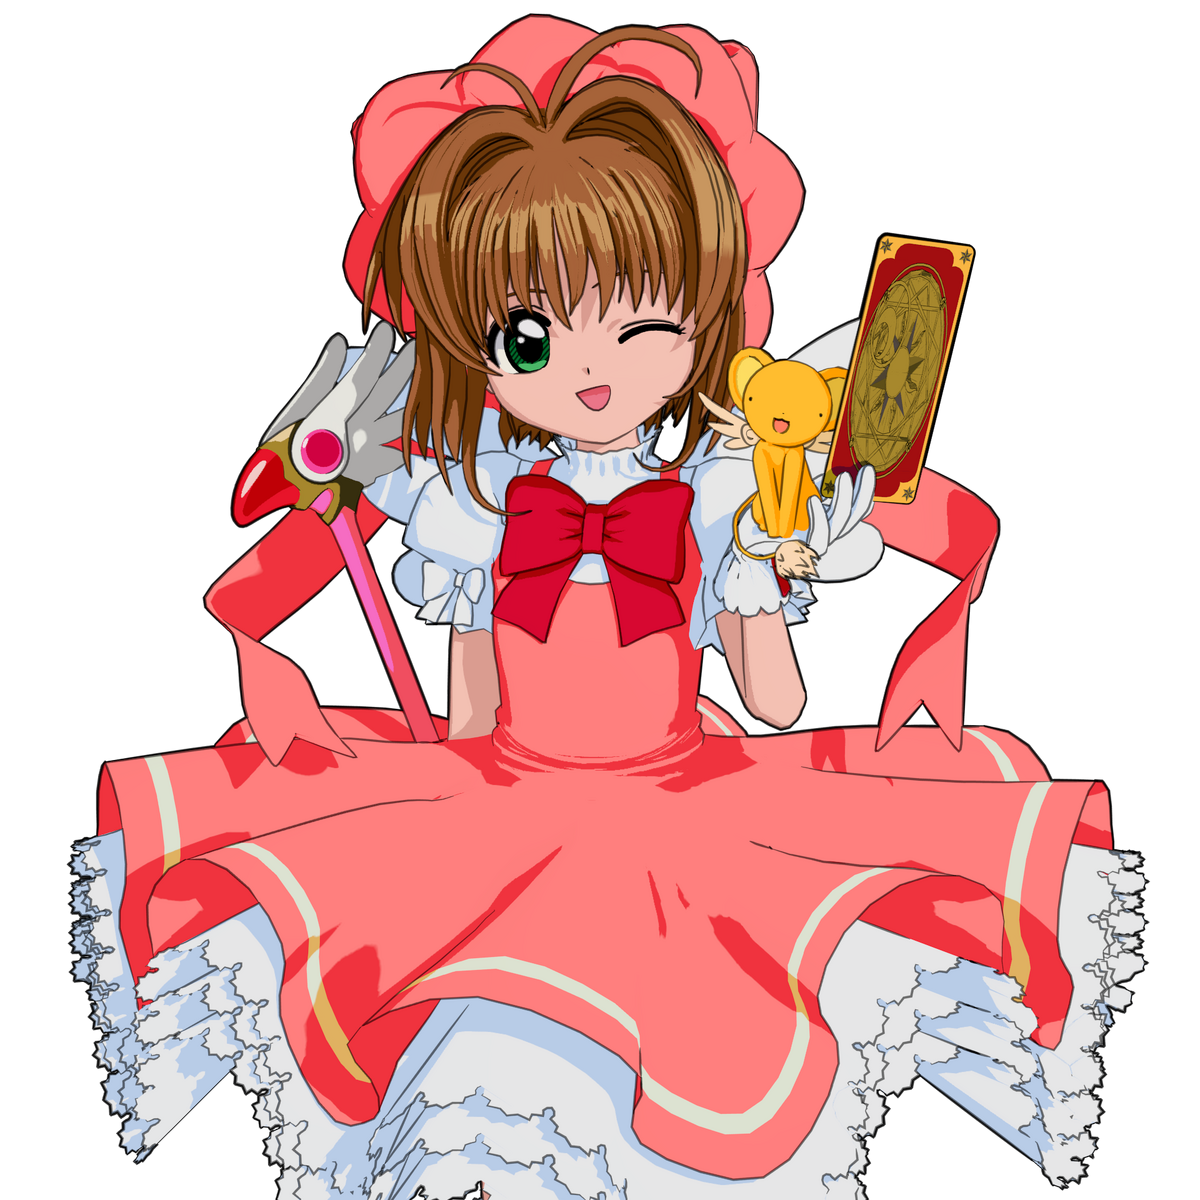 Cardcaptor Sakura: Clear Card - Wikipedia